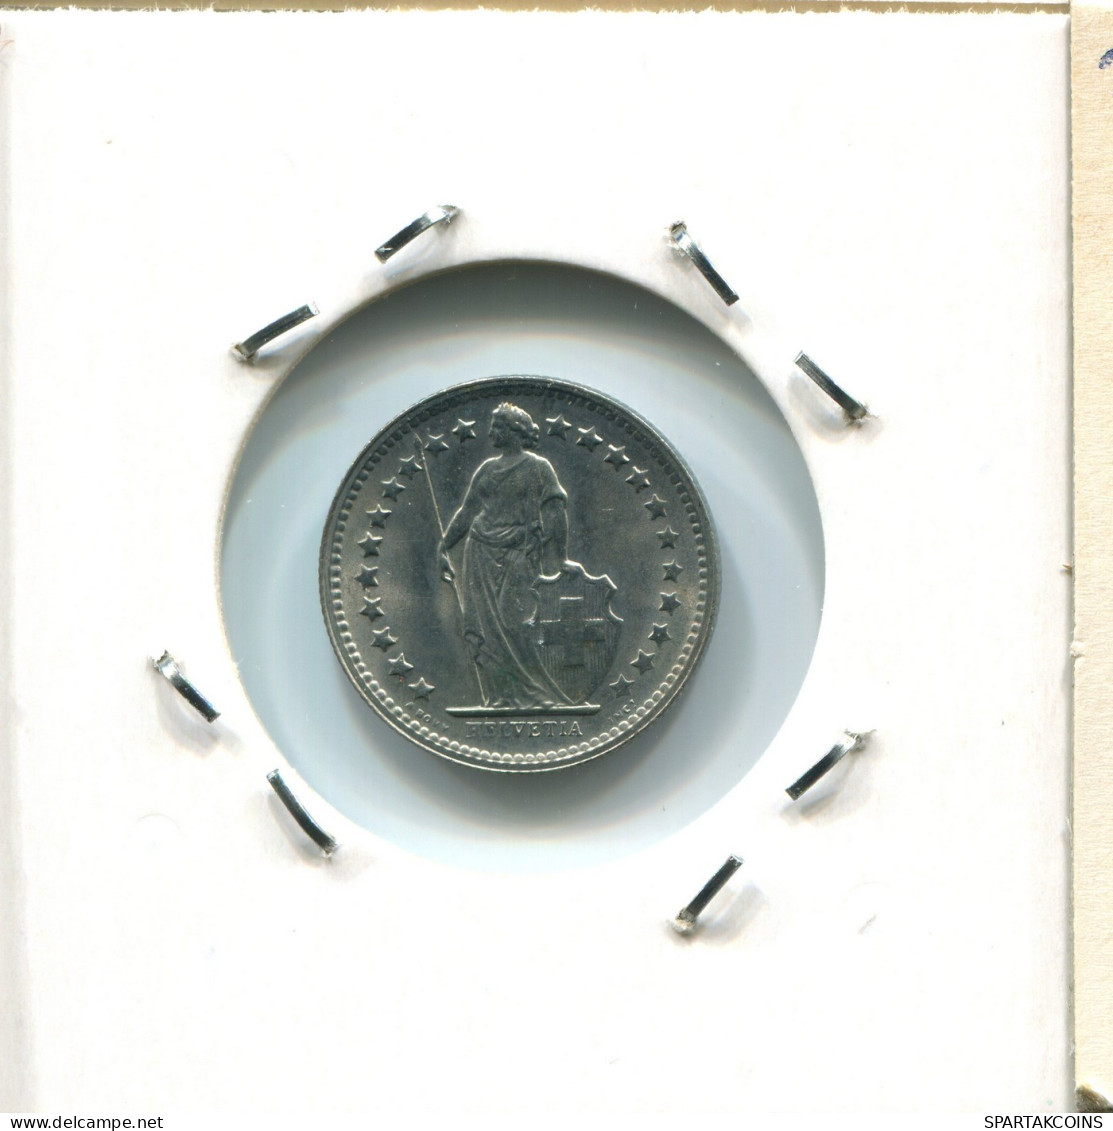 1/2 FRANC 1969 FRANCE Coin #AX034.U.A - 1/2 Franc